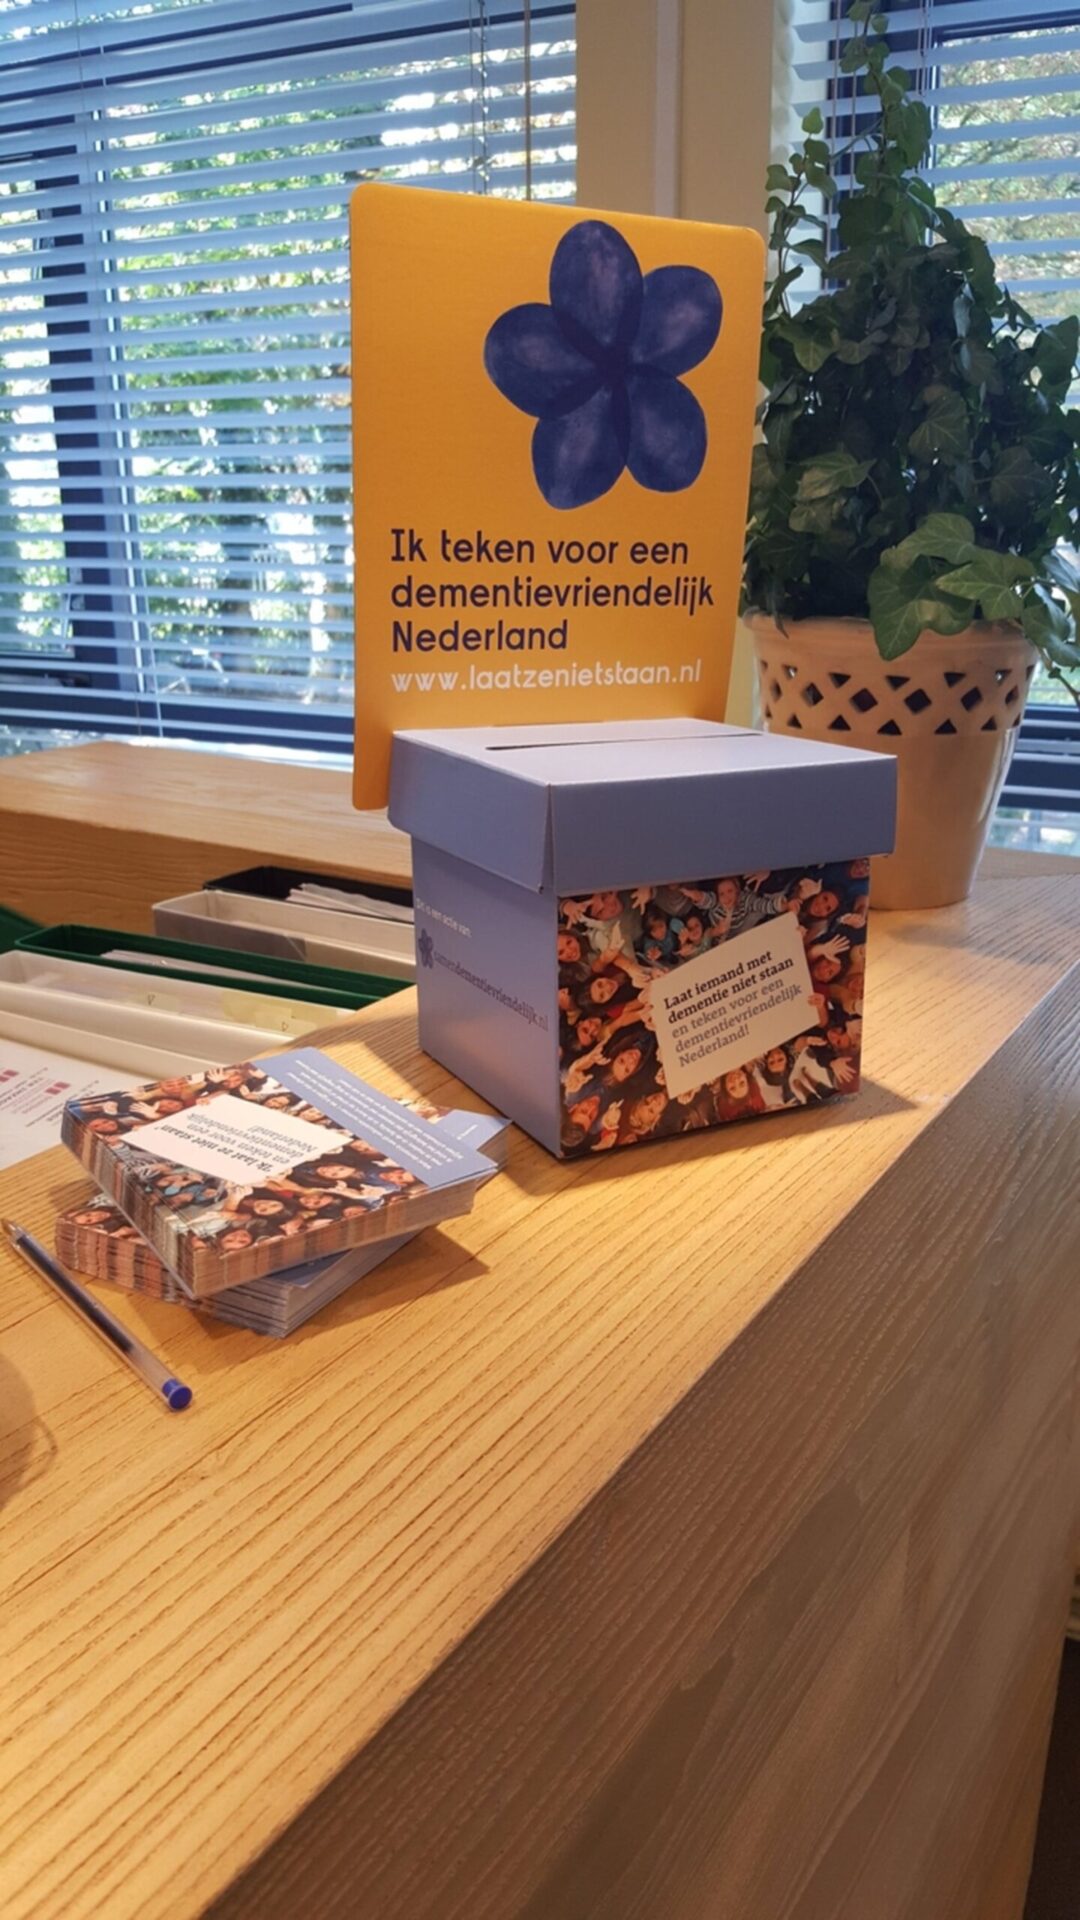 Wij steunen de campagne voor een dementievriendelijk Nederland